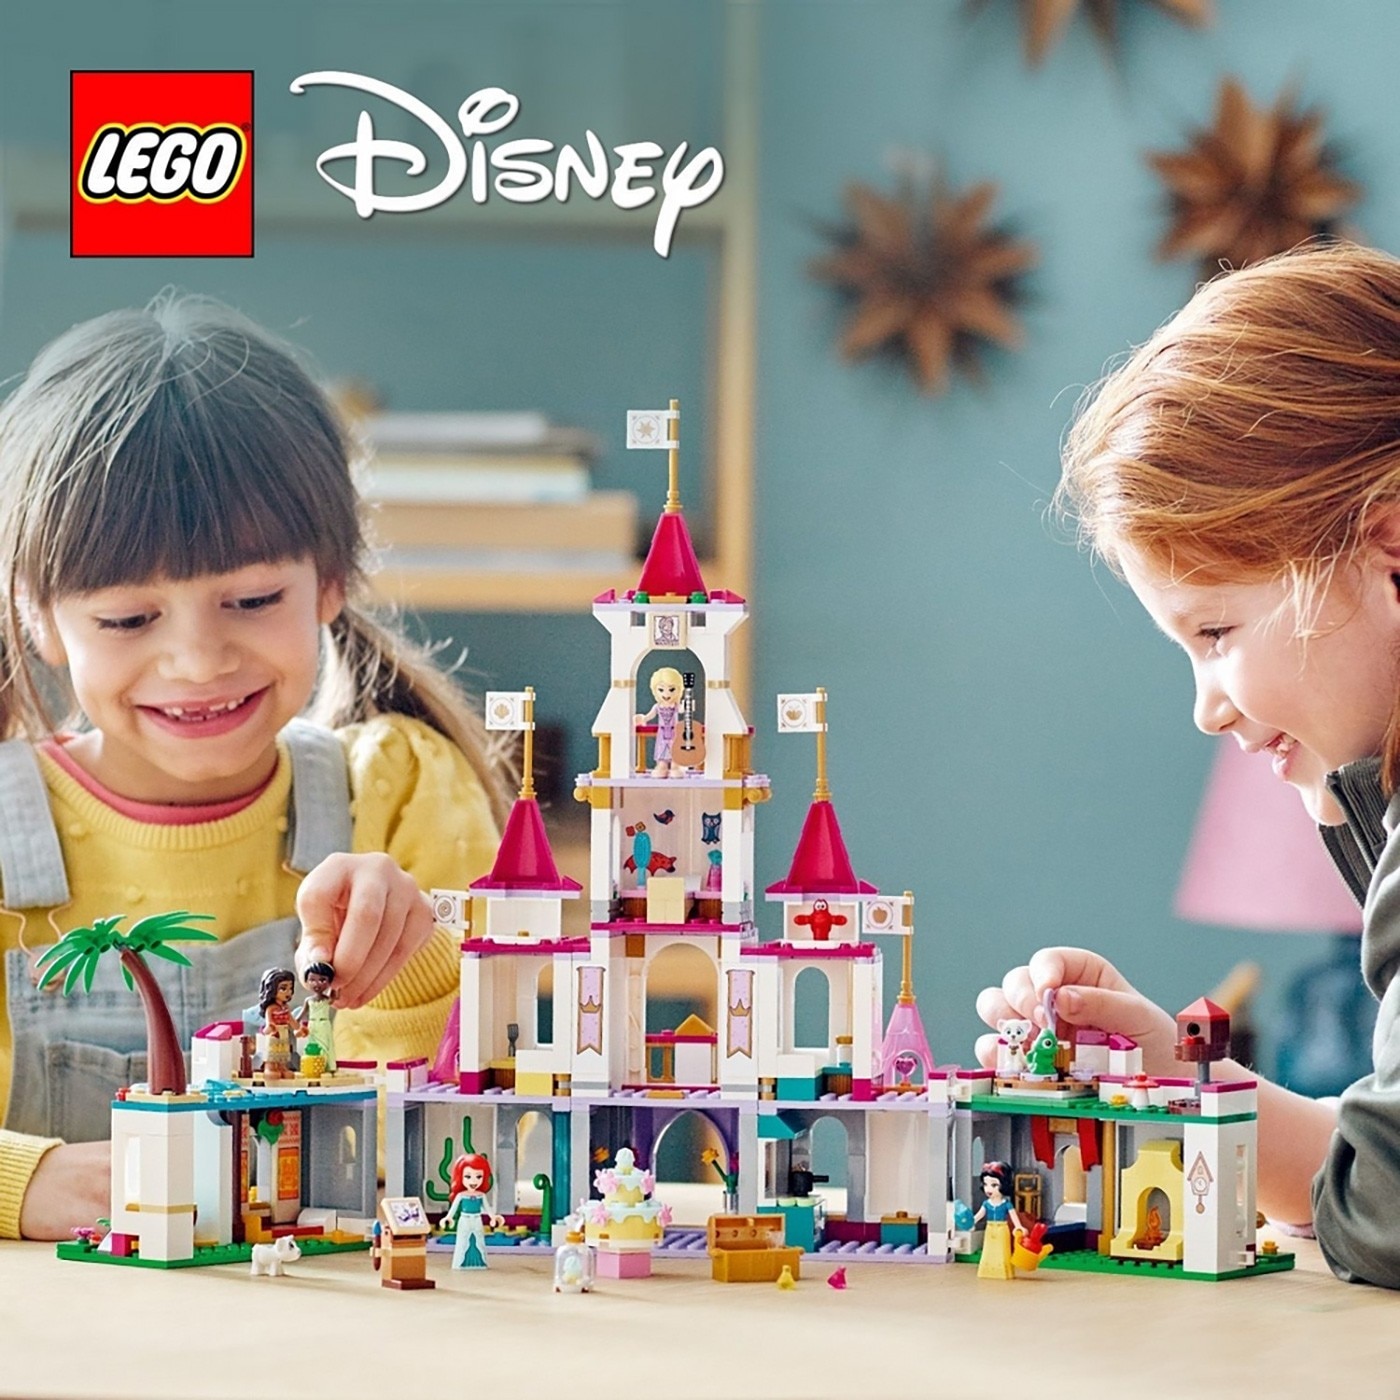 LEGO 迪士尼公主系列 城堡公主，含 5 個 DISNEY 公主人偶，使用 LEGO 應用程式，可同時拼砌並預覽模型，城堡共四層樓、五間臥室，城堡可開啟並上鎖。